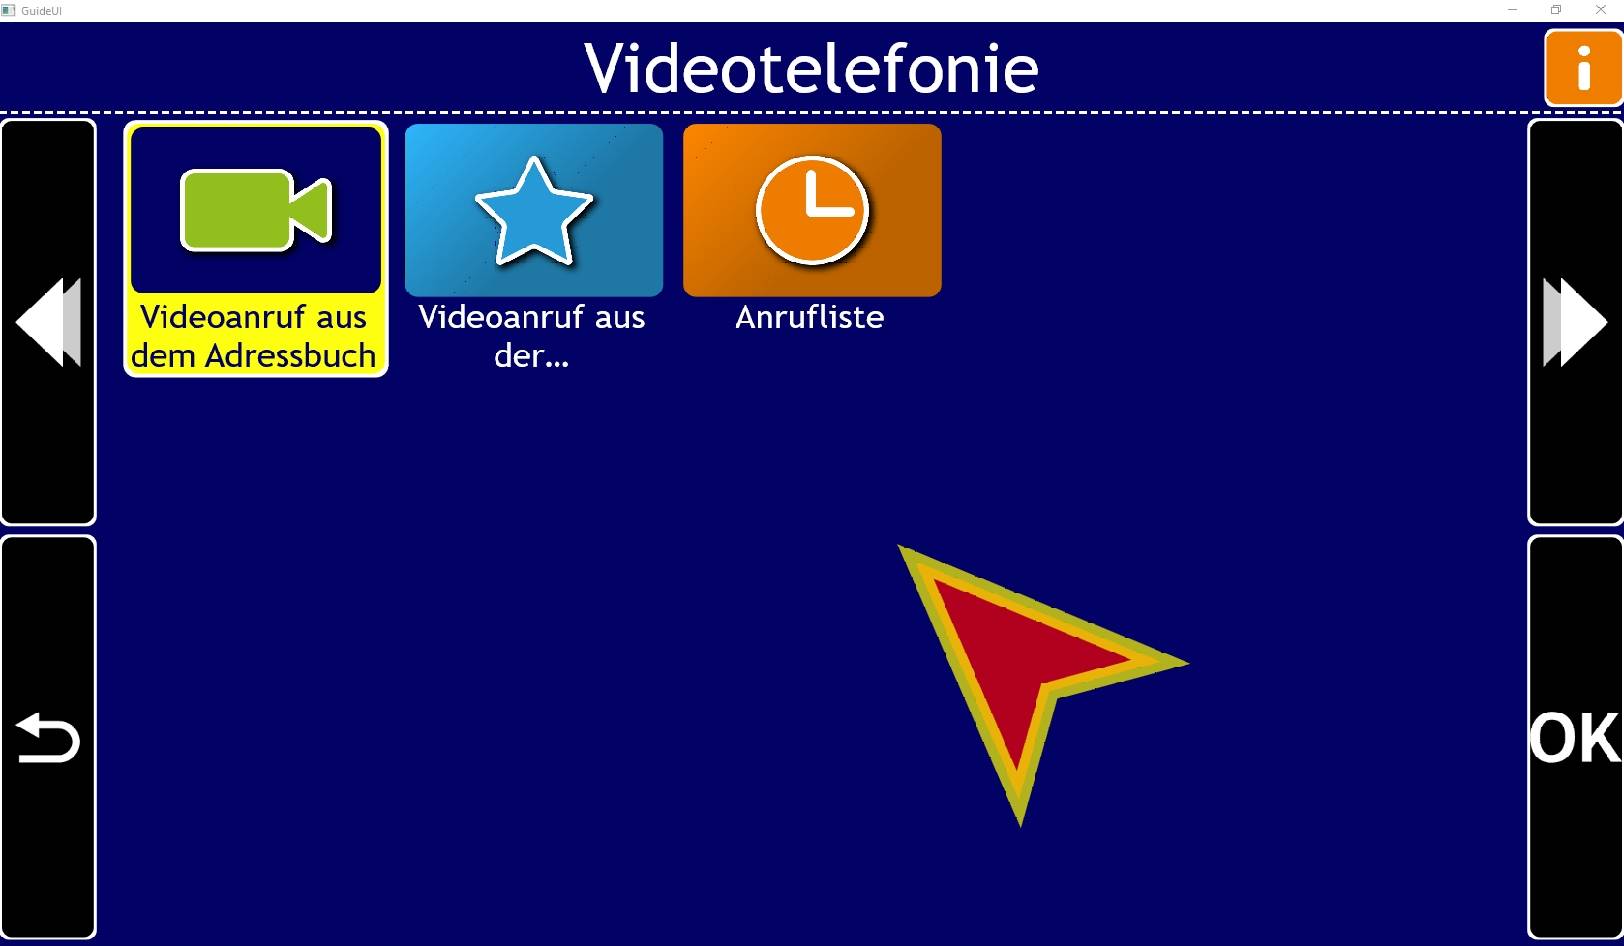 Vistac GmbH - Dolphin GuideConnect Videotelefoniemenü